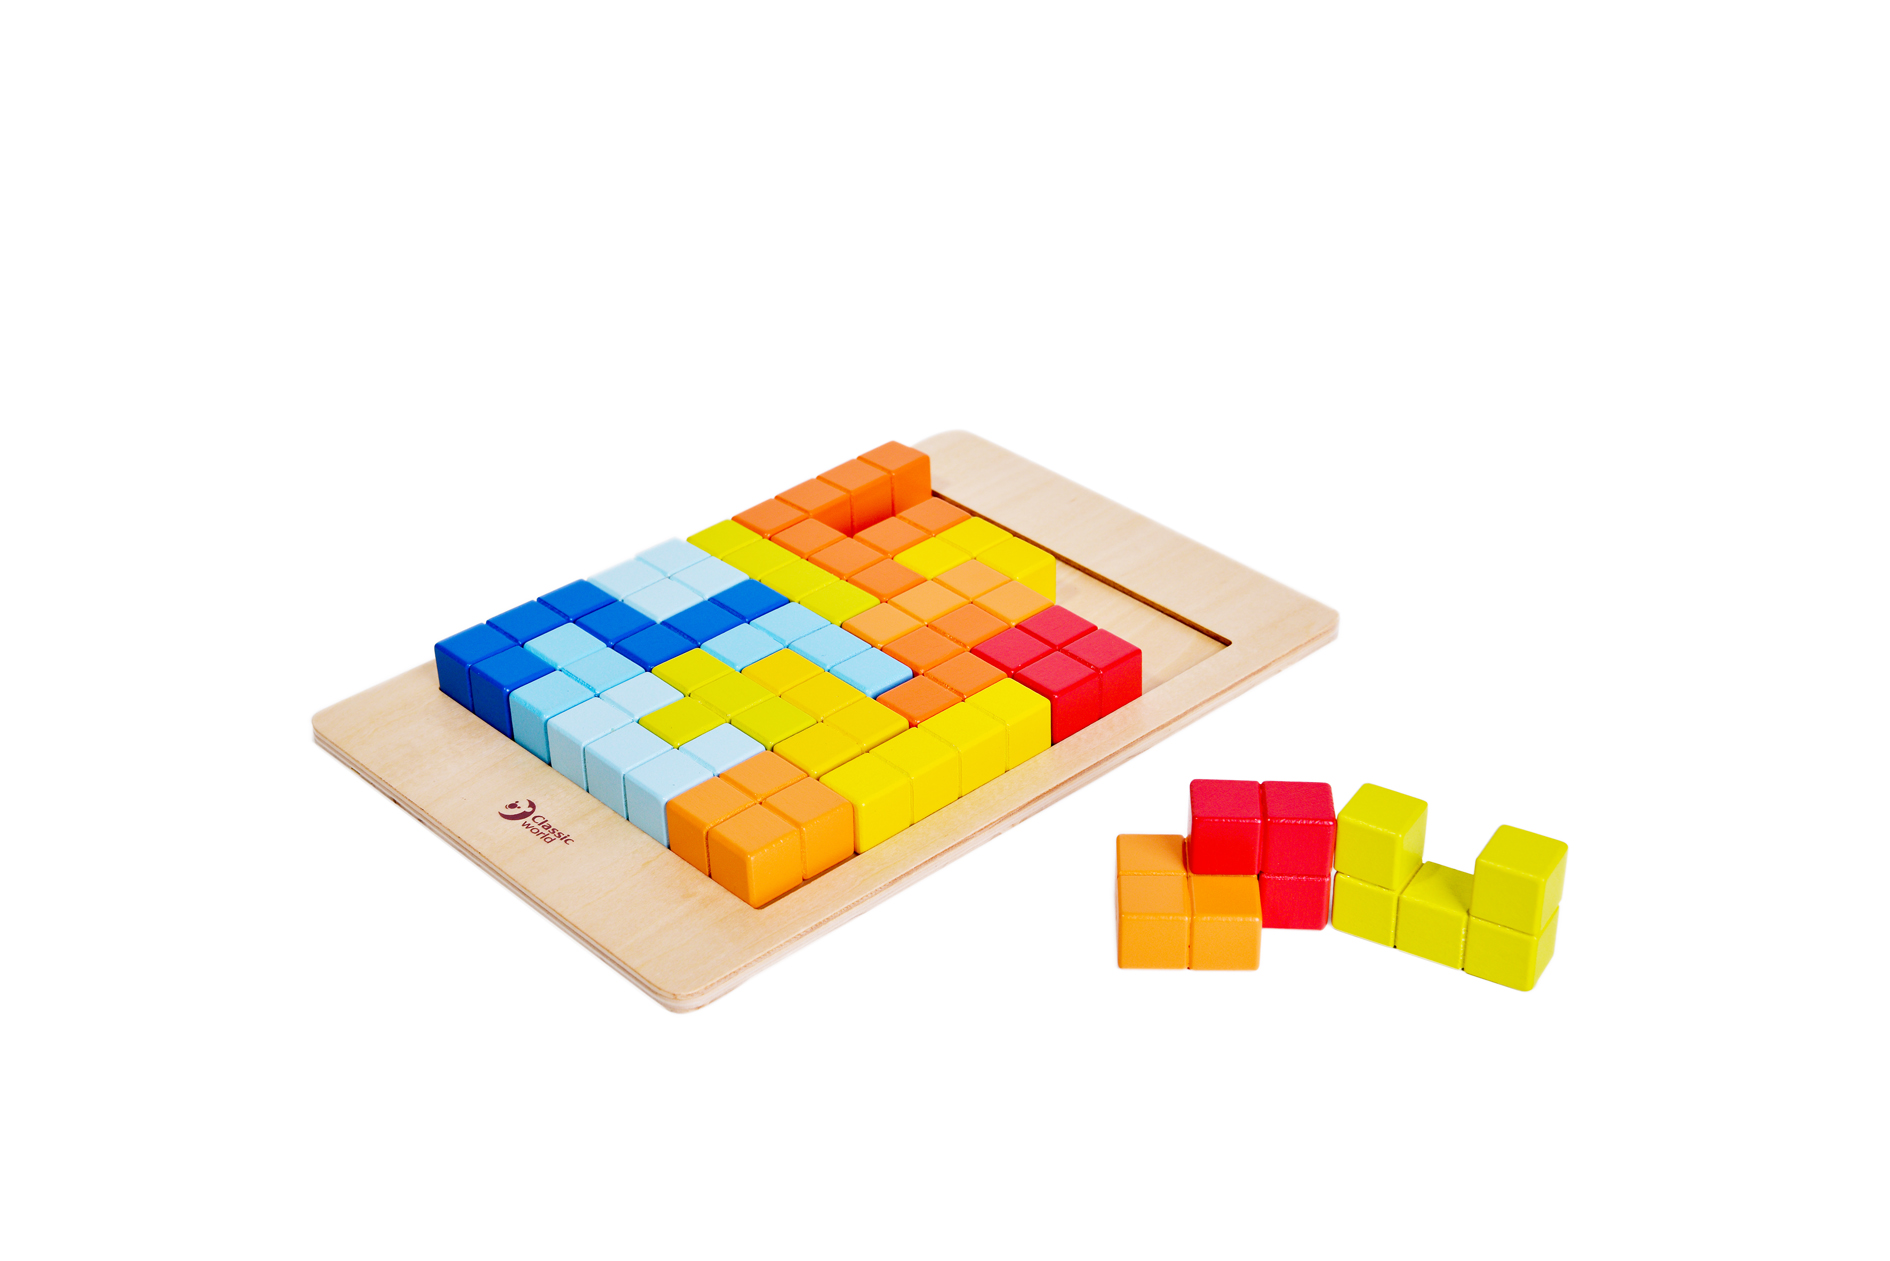 3D Tetris Game